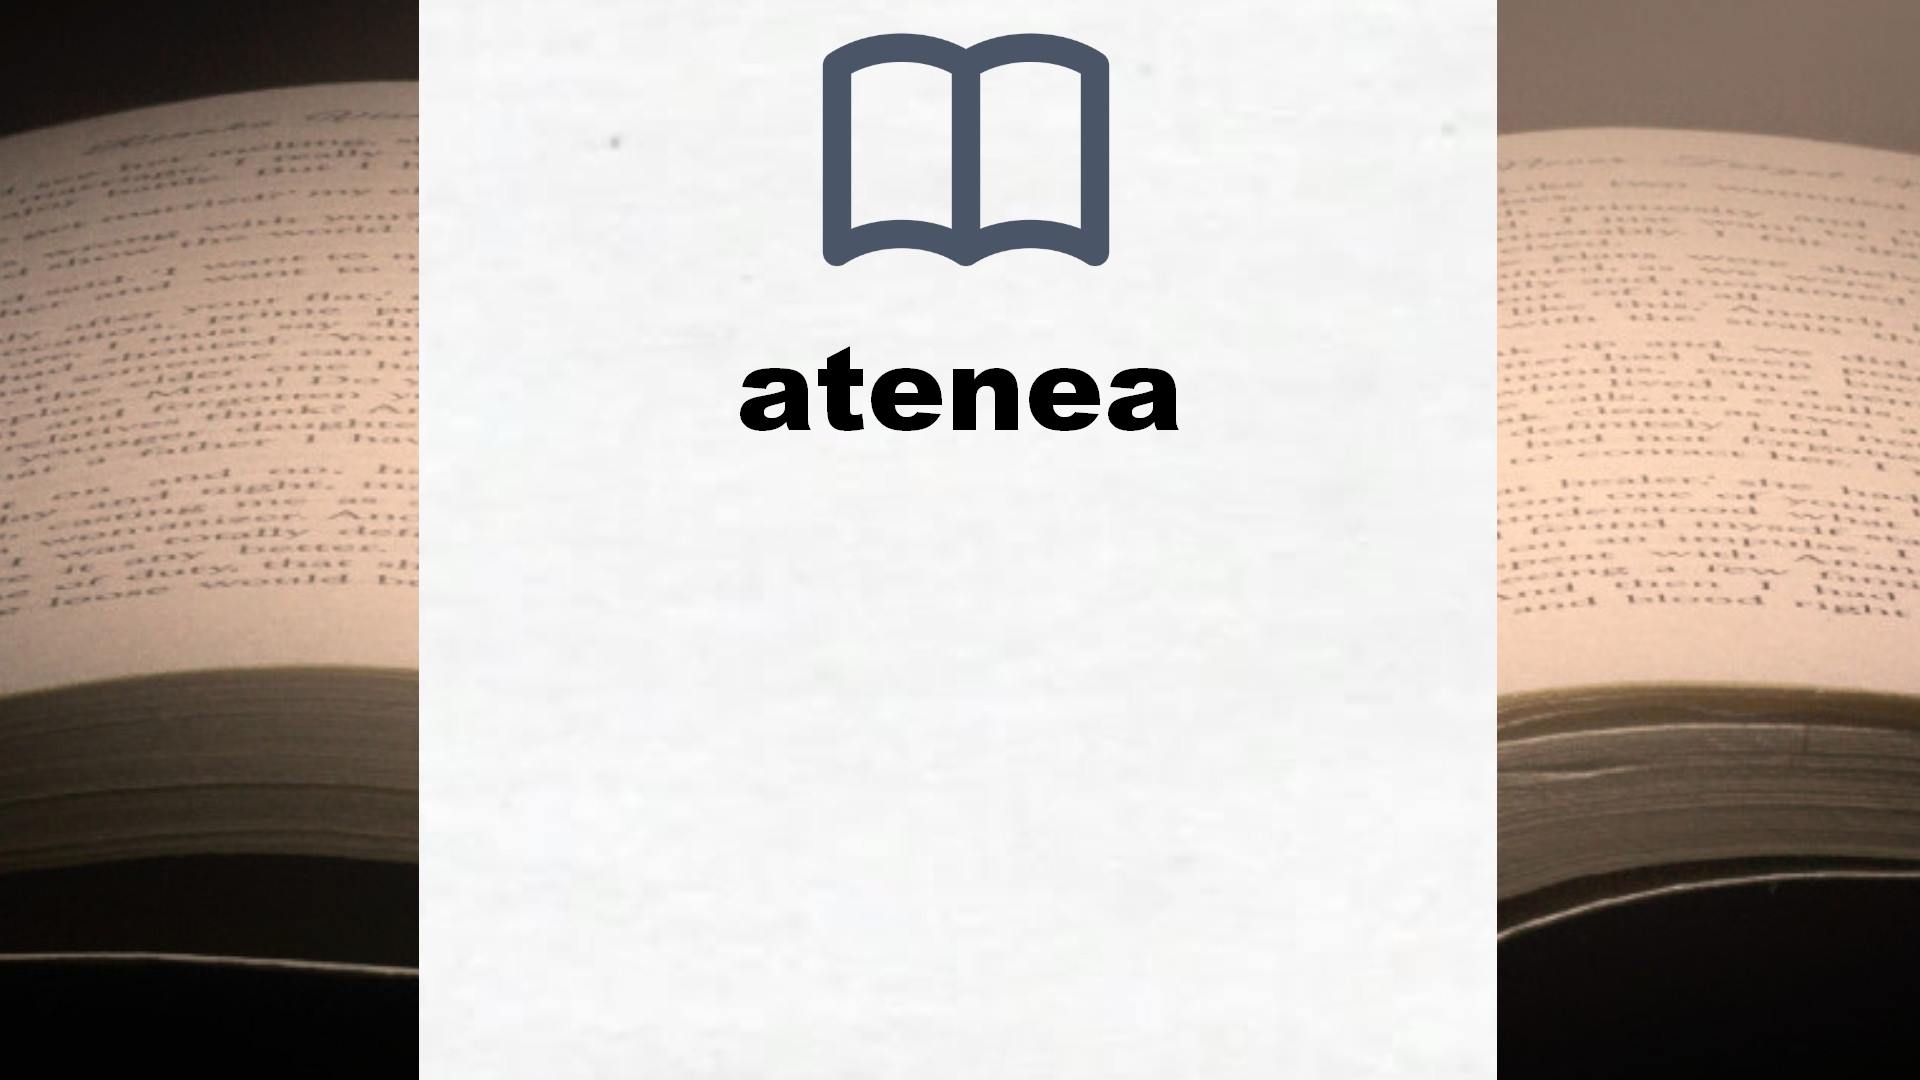 Libros sobre atenea